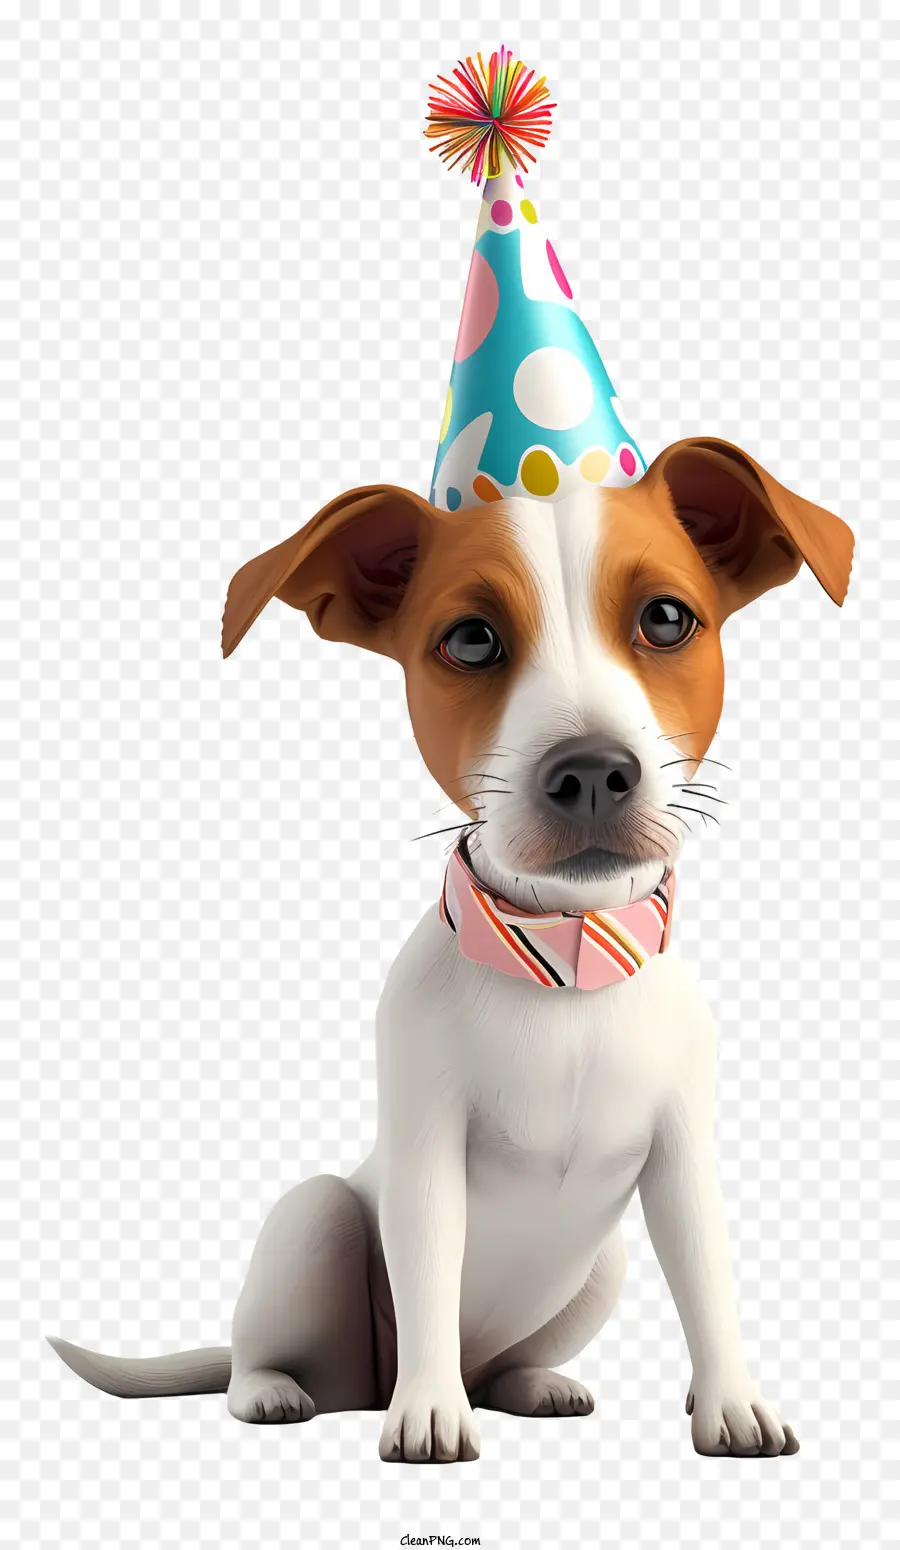 Pet Birthday Dog trägt Geburtstagshut kleiner weißer und brauner Hundhund mit geneigter Kopfhund mit Kragen und Glocke - Lächelnder Hund mit Geburtstagshut und Glockenkragen